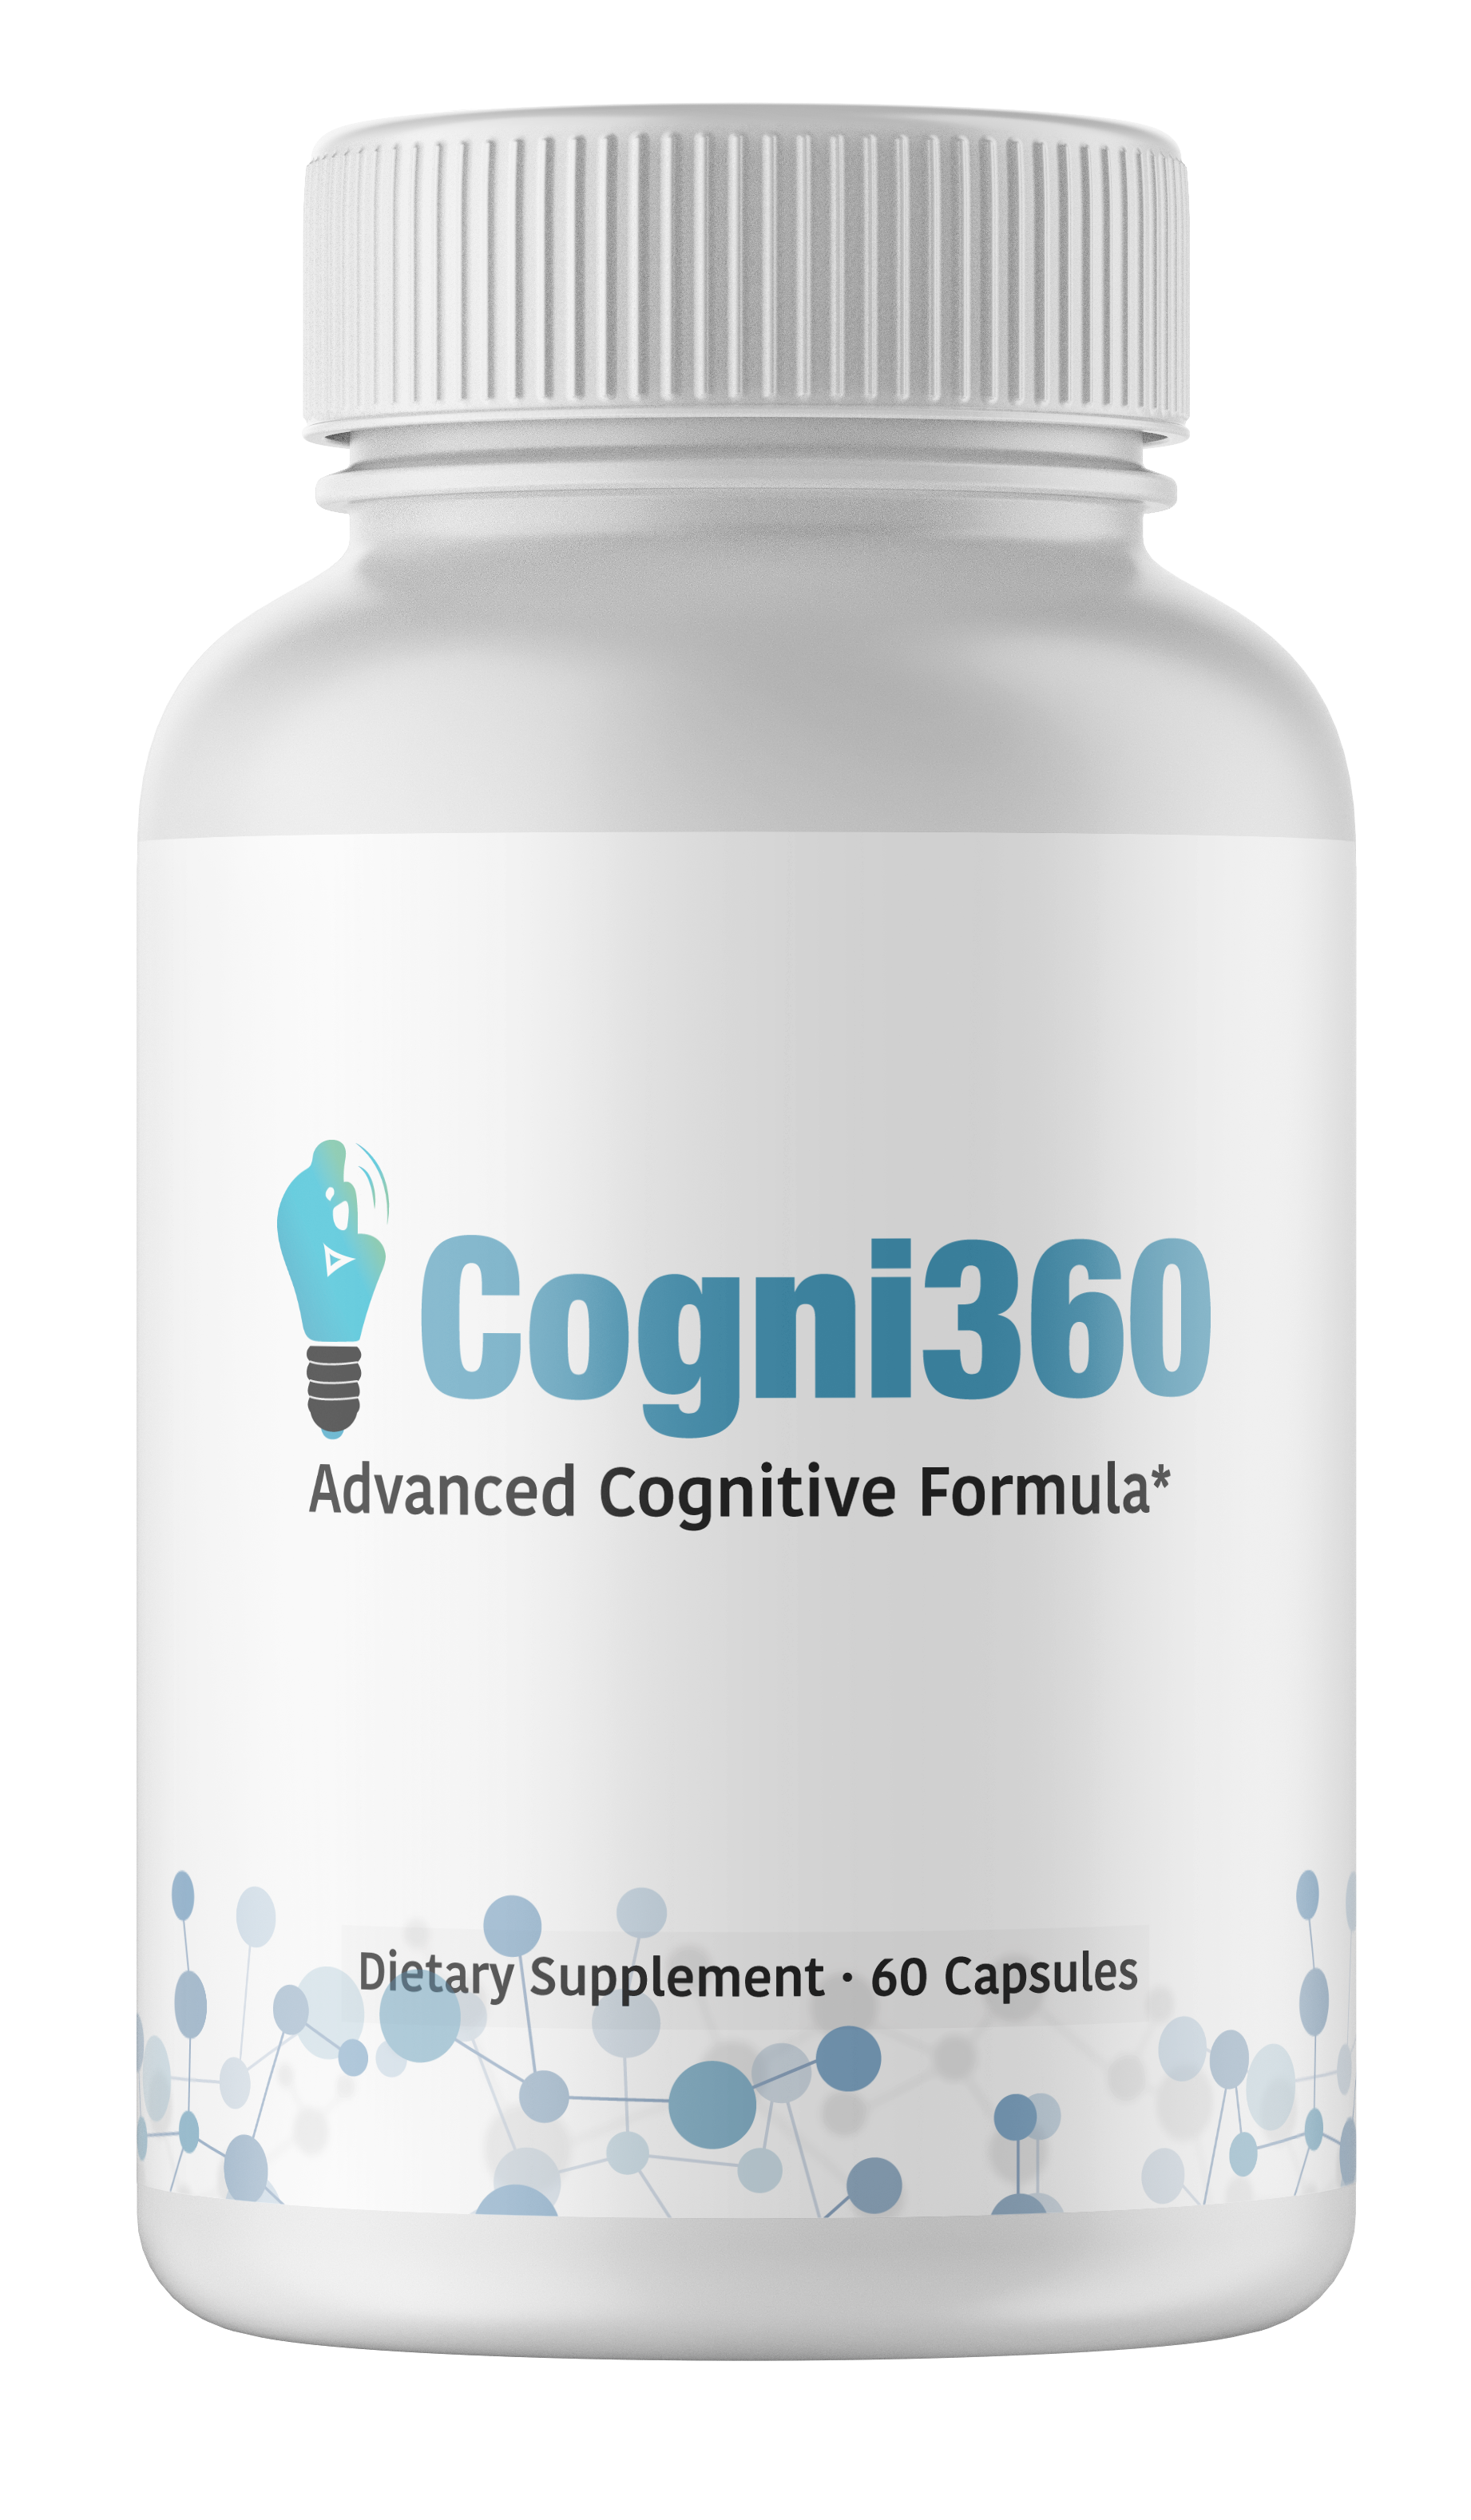 2 Bottles Cogni360 BRAIN ENHANCEMENT Supplement 100% NATURAL 60 Capsules x2